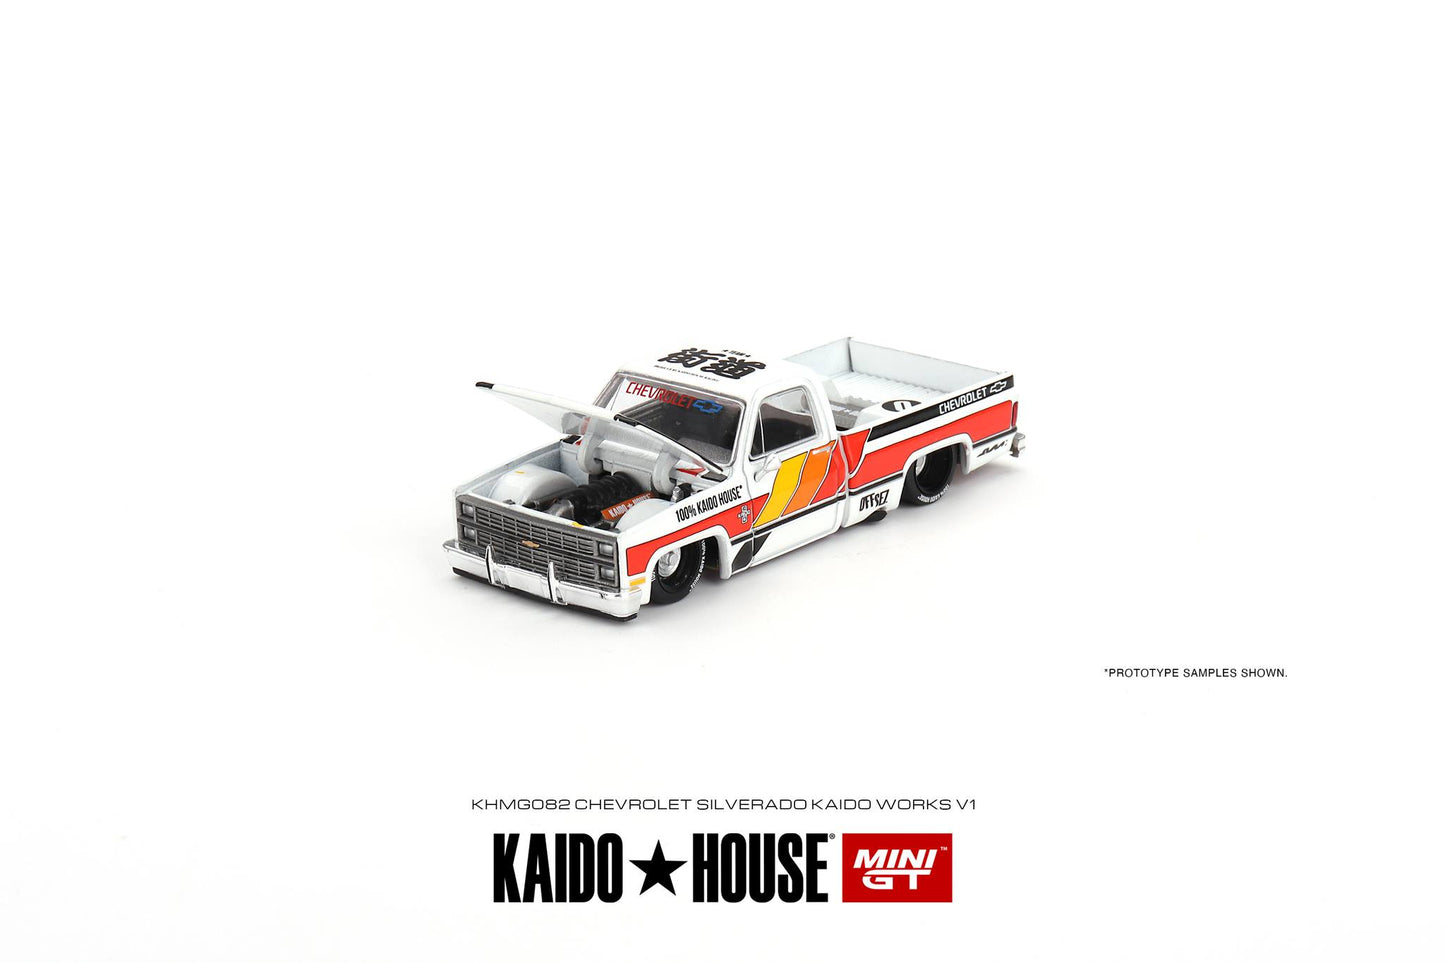 Mini GT x Kaido★House 1/64 Chevrolet Silverado Kaido Works V1